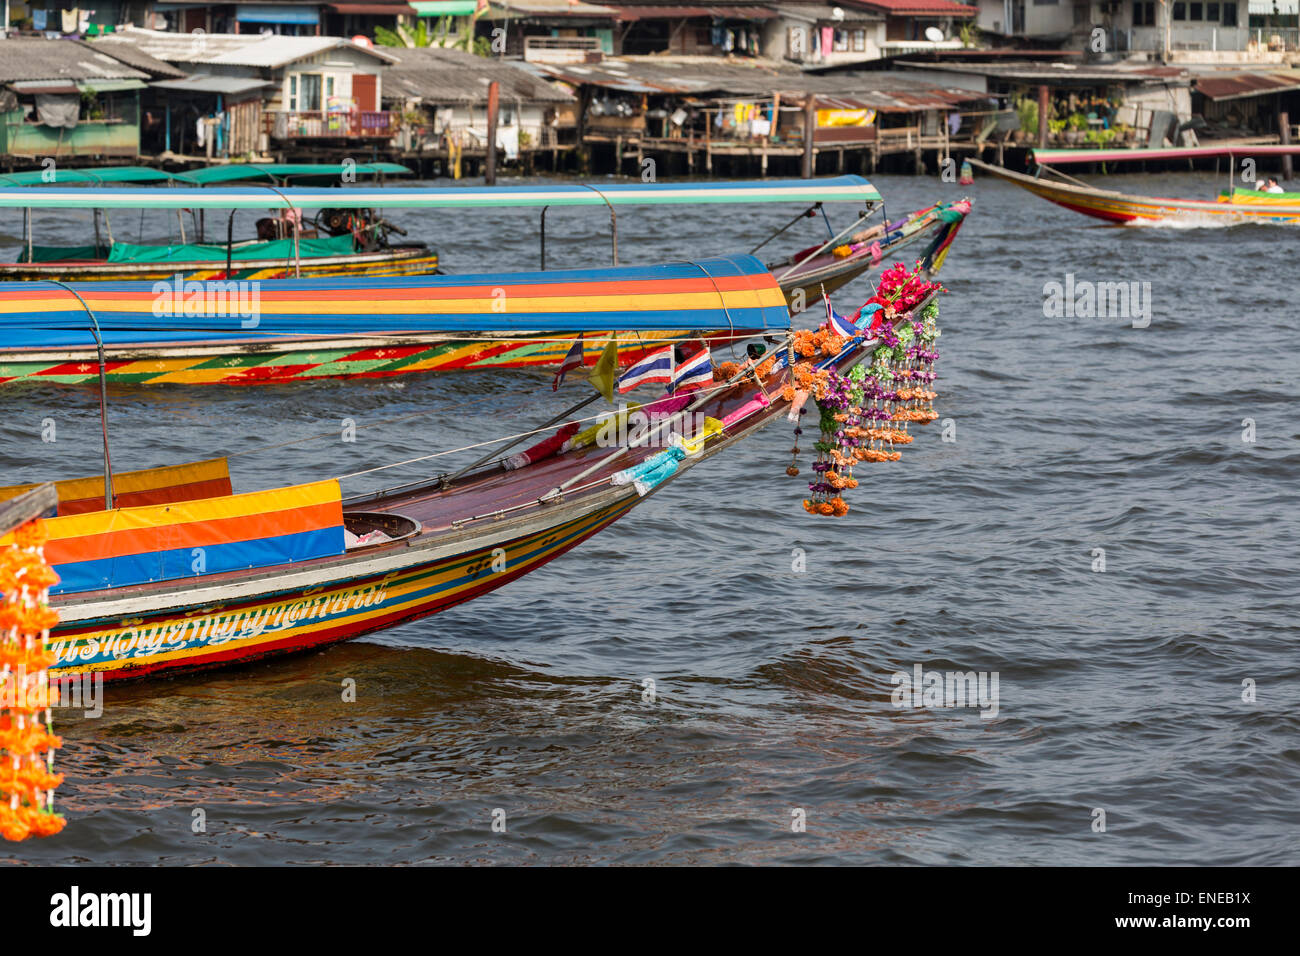 Bateaux sur la rivière Chao Phraya à Bangkok, Thailande, Asie Banque D'Images